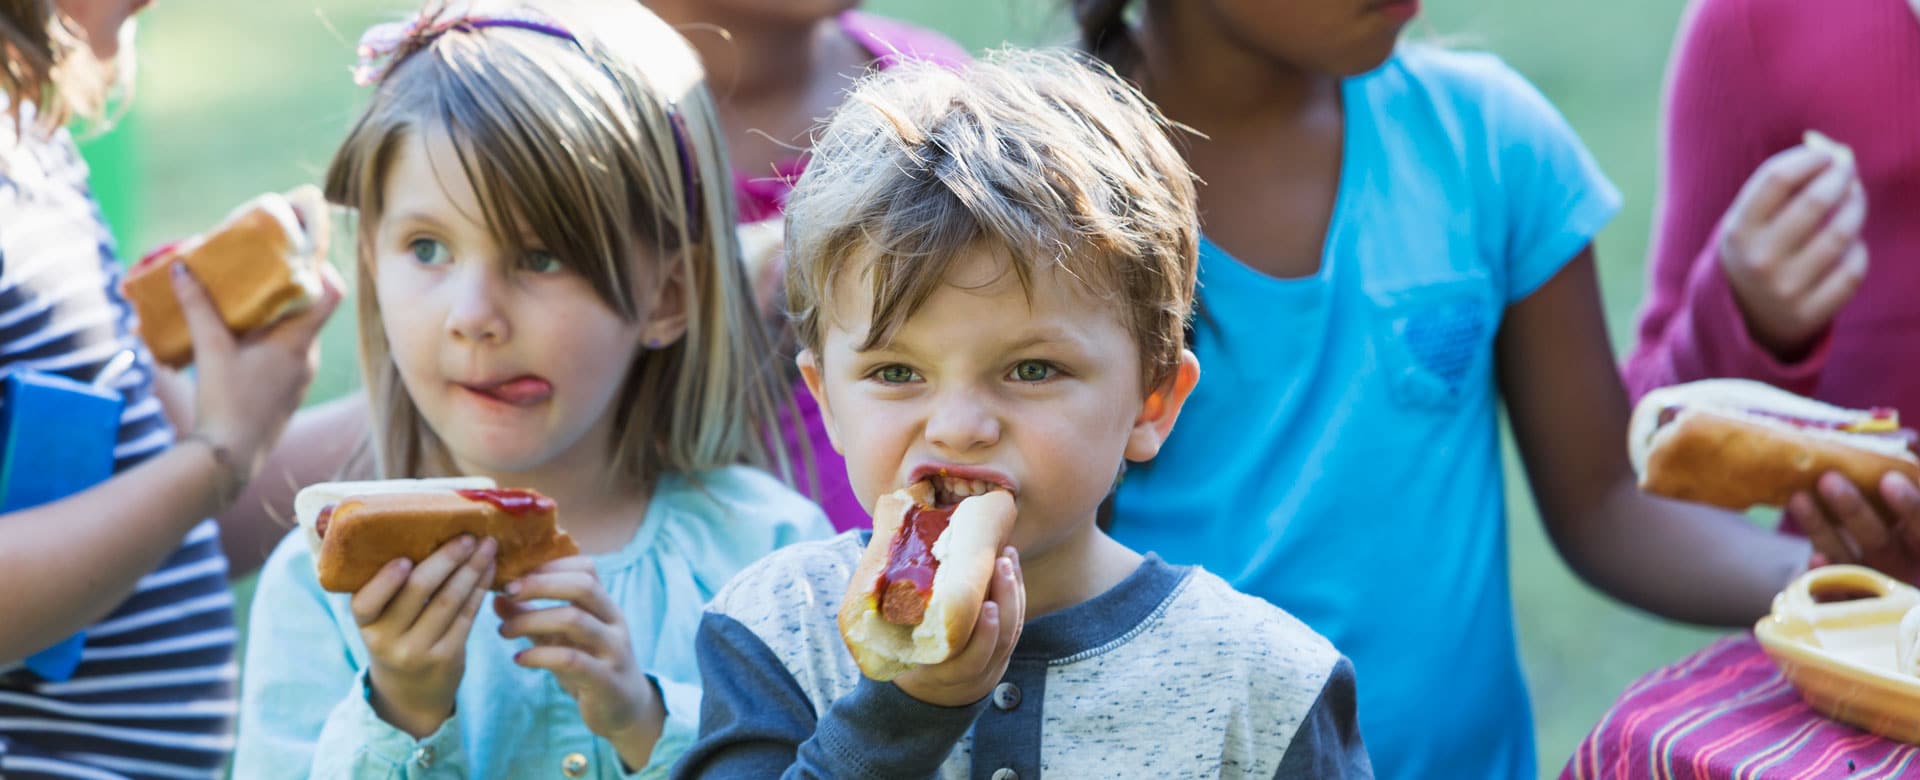 petits enfants mangeant des hot-dogs